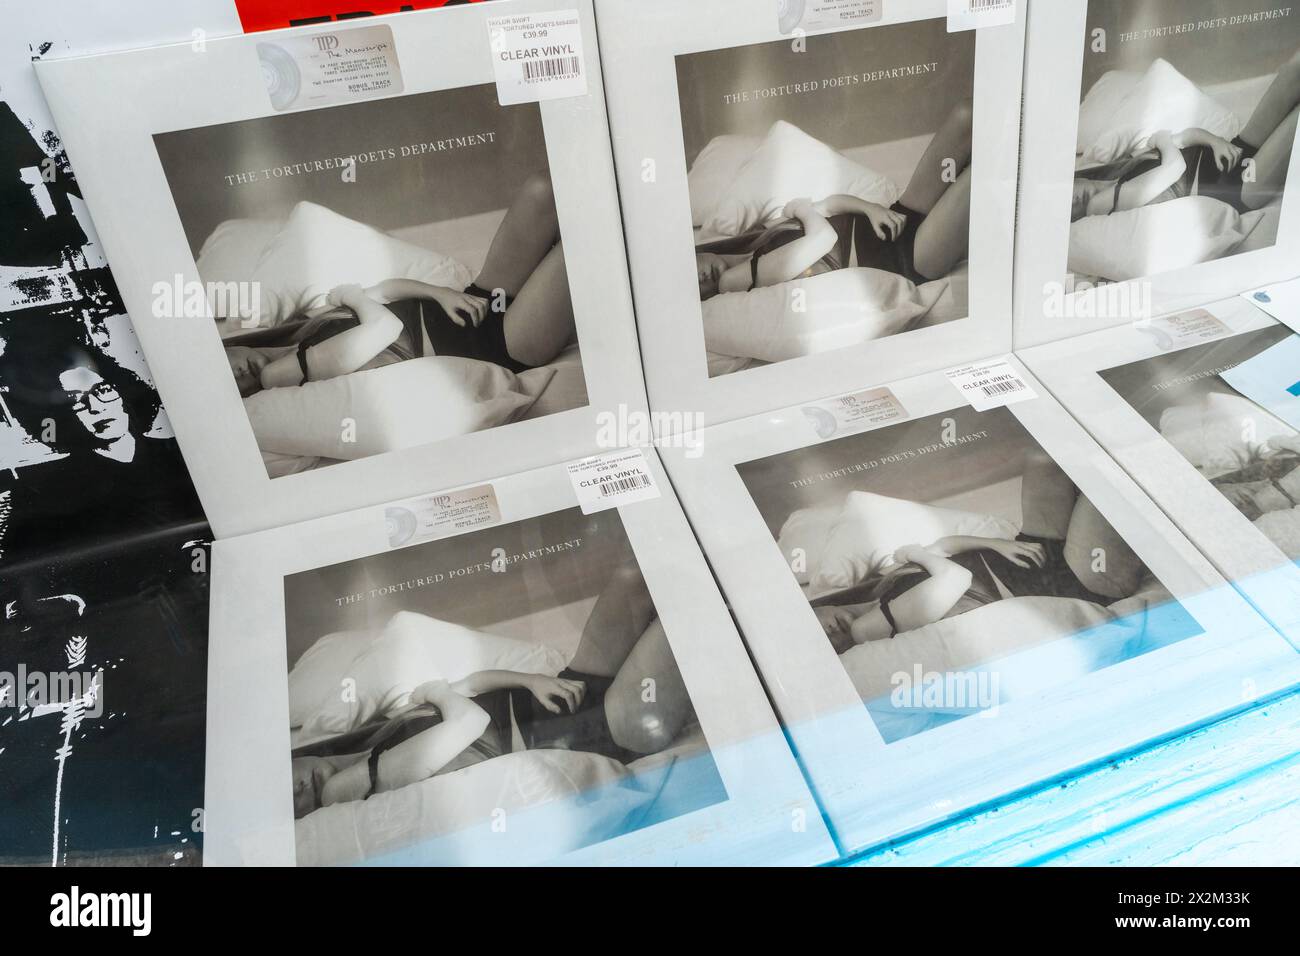 Kopien des Taylor-Swift-Albums The Foltured Poets Department auf klarem Vinyl, in einem Plattenladen ausgestellt. Marketingkonzept der Musikindustrie Stockfoto